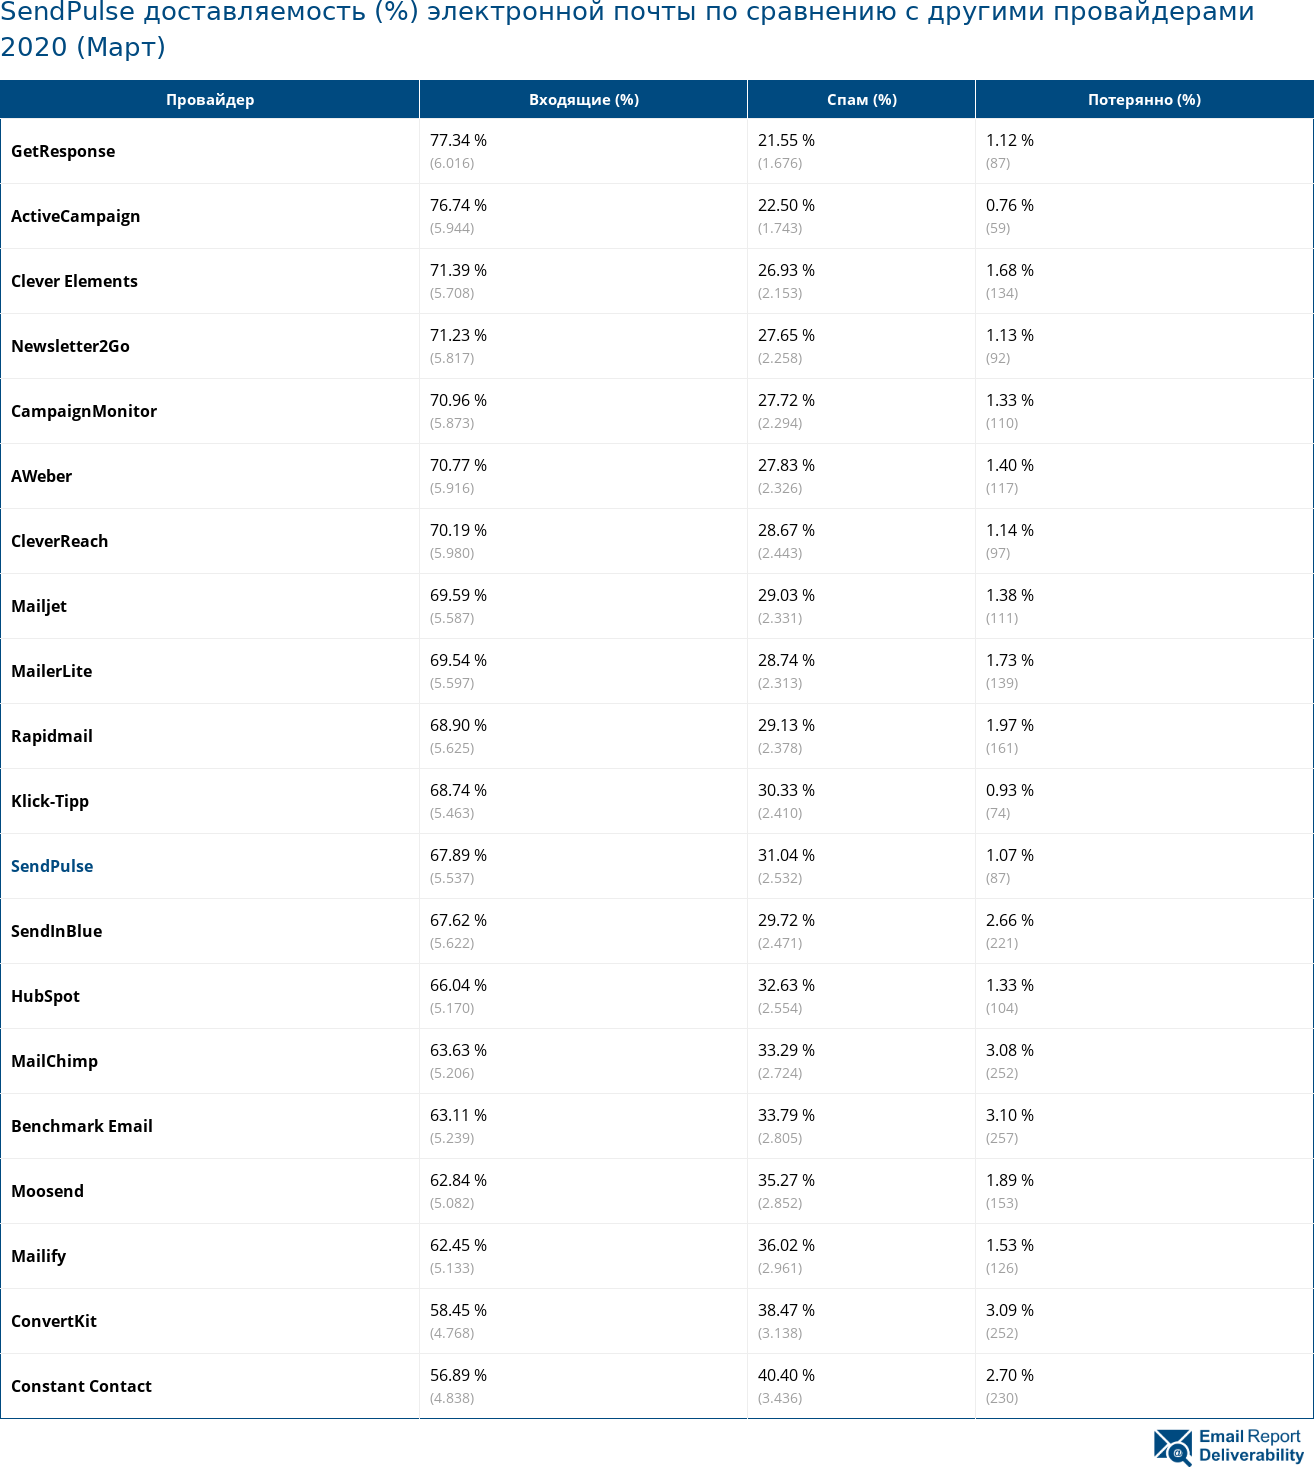 SendPulse доставляемость (%) электронной почты по сравнению с другими провайдерами 2020 (Март)